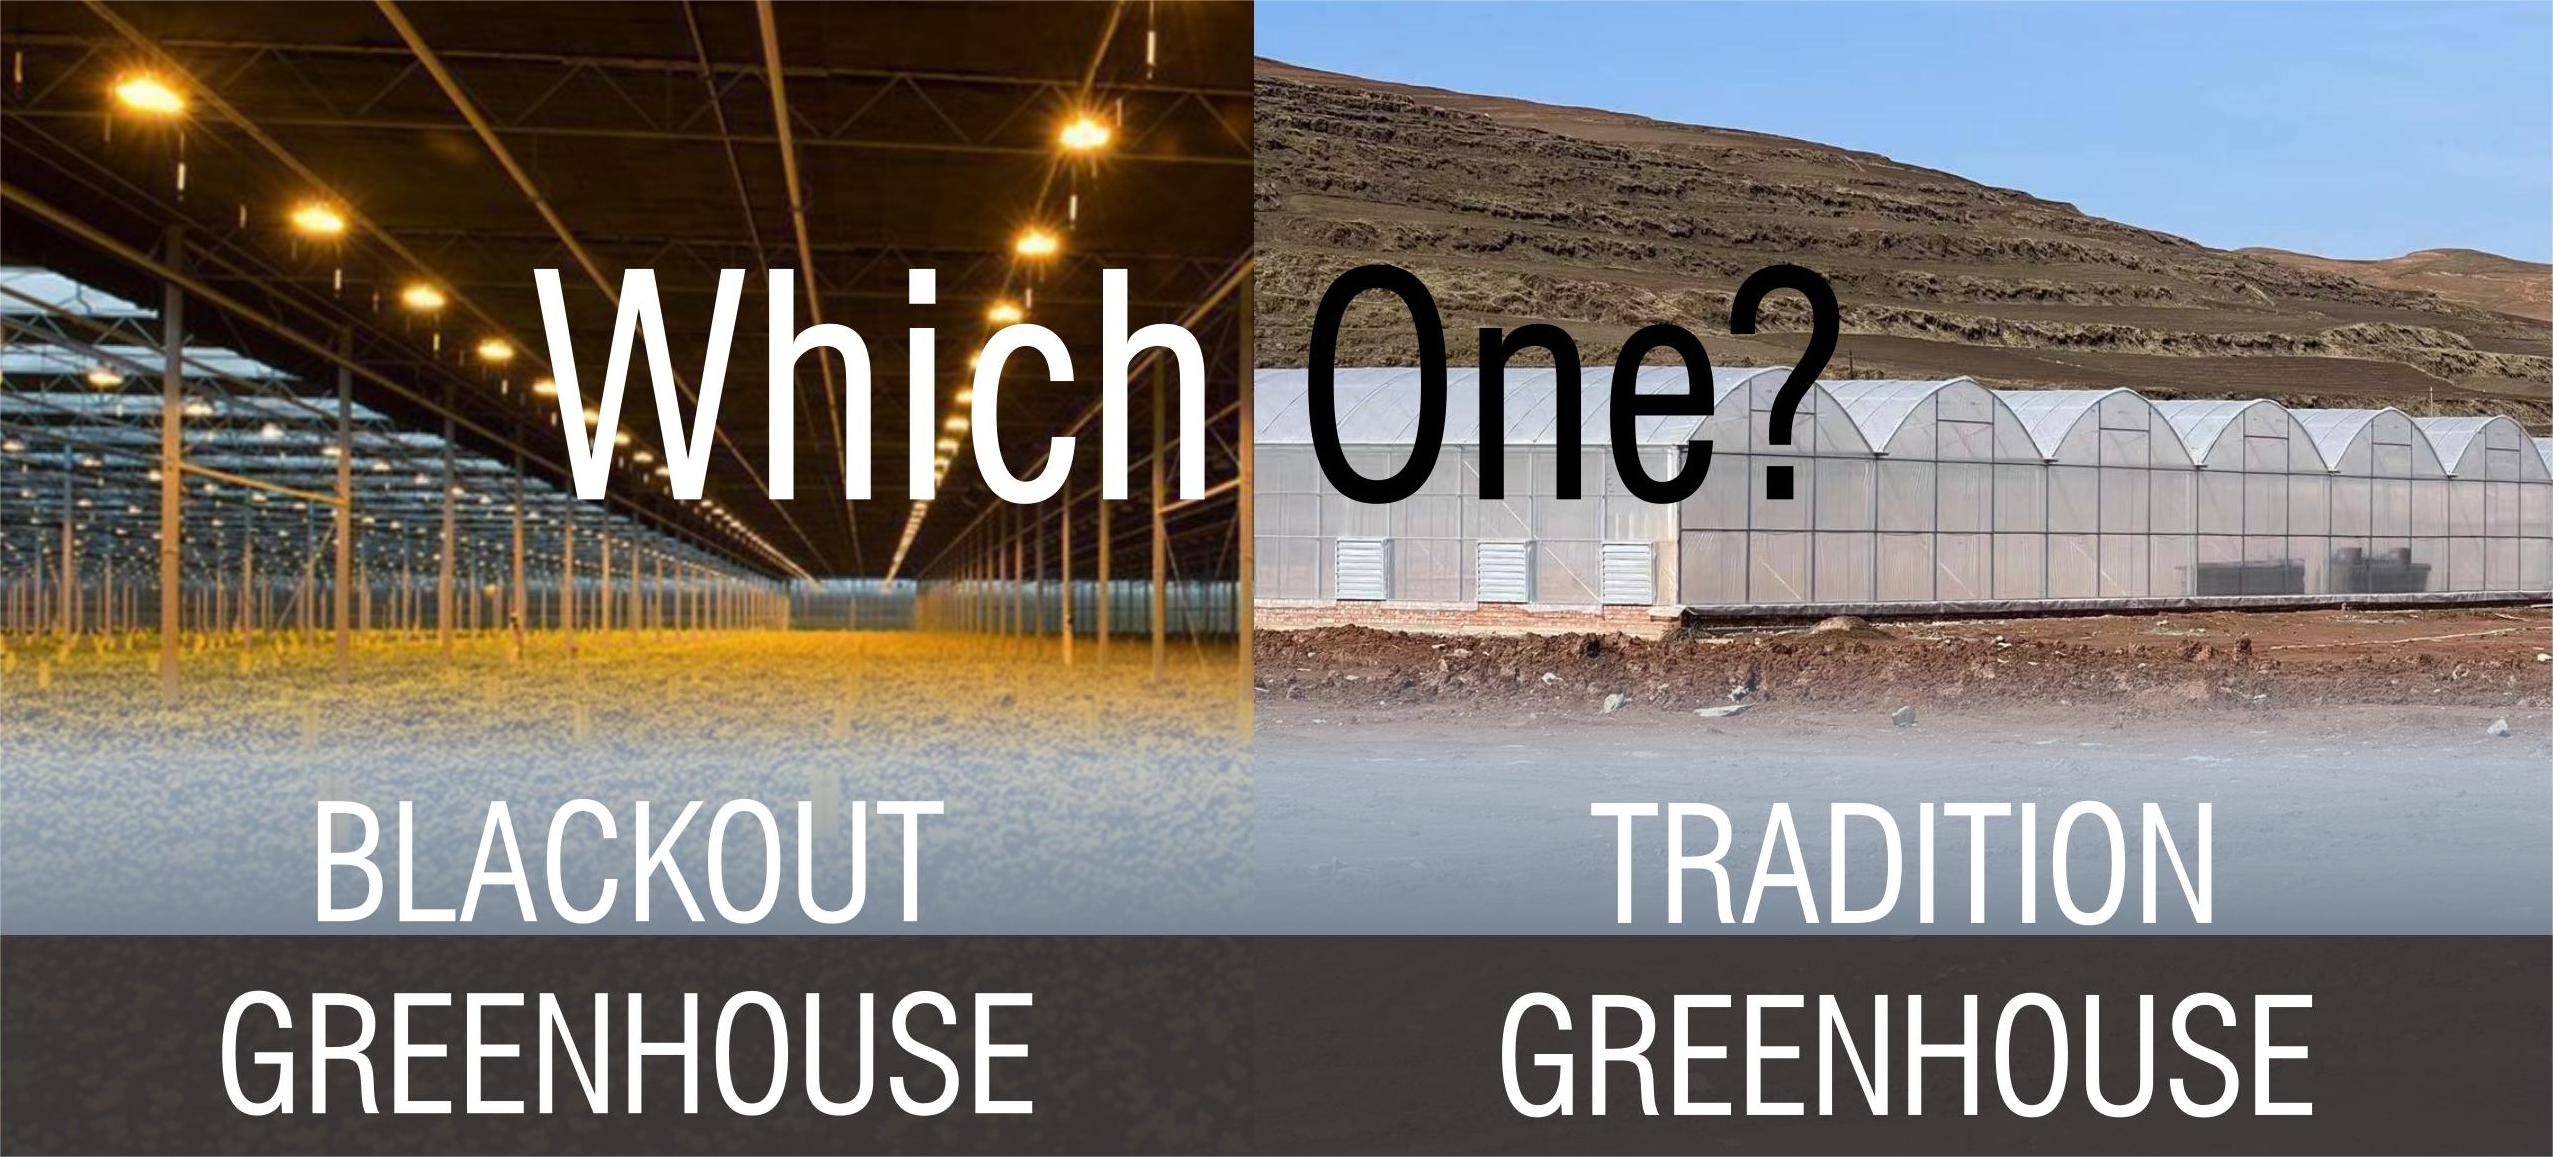 Te Hanga i To Angitu: Blackout Greenhouse vs. Traditional Greenhouse for Kaiahuwhenua